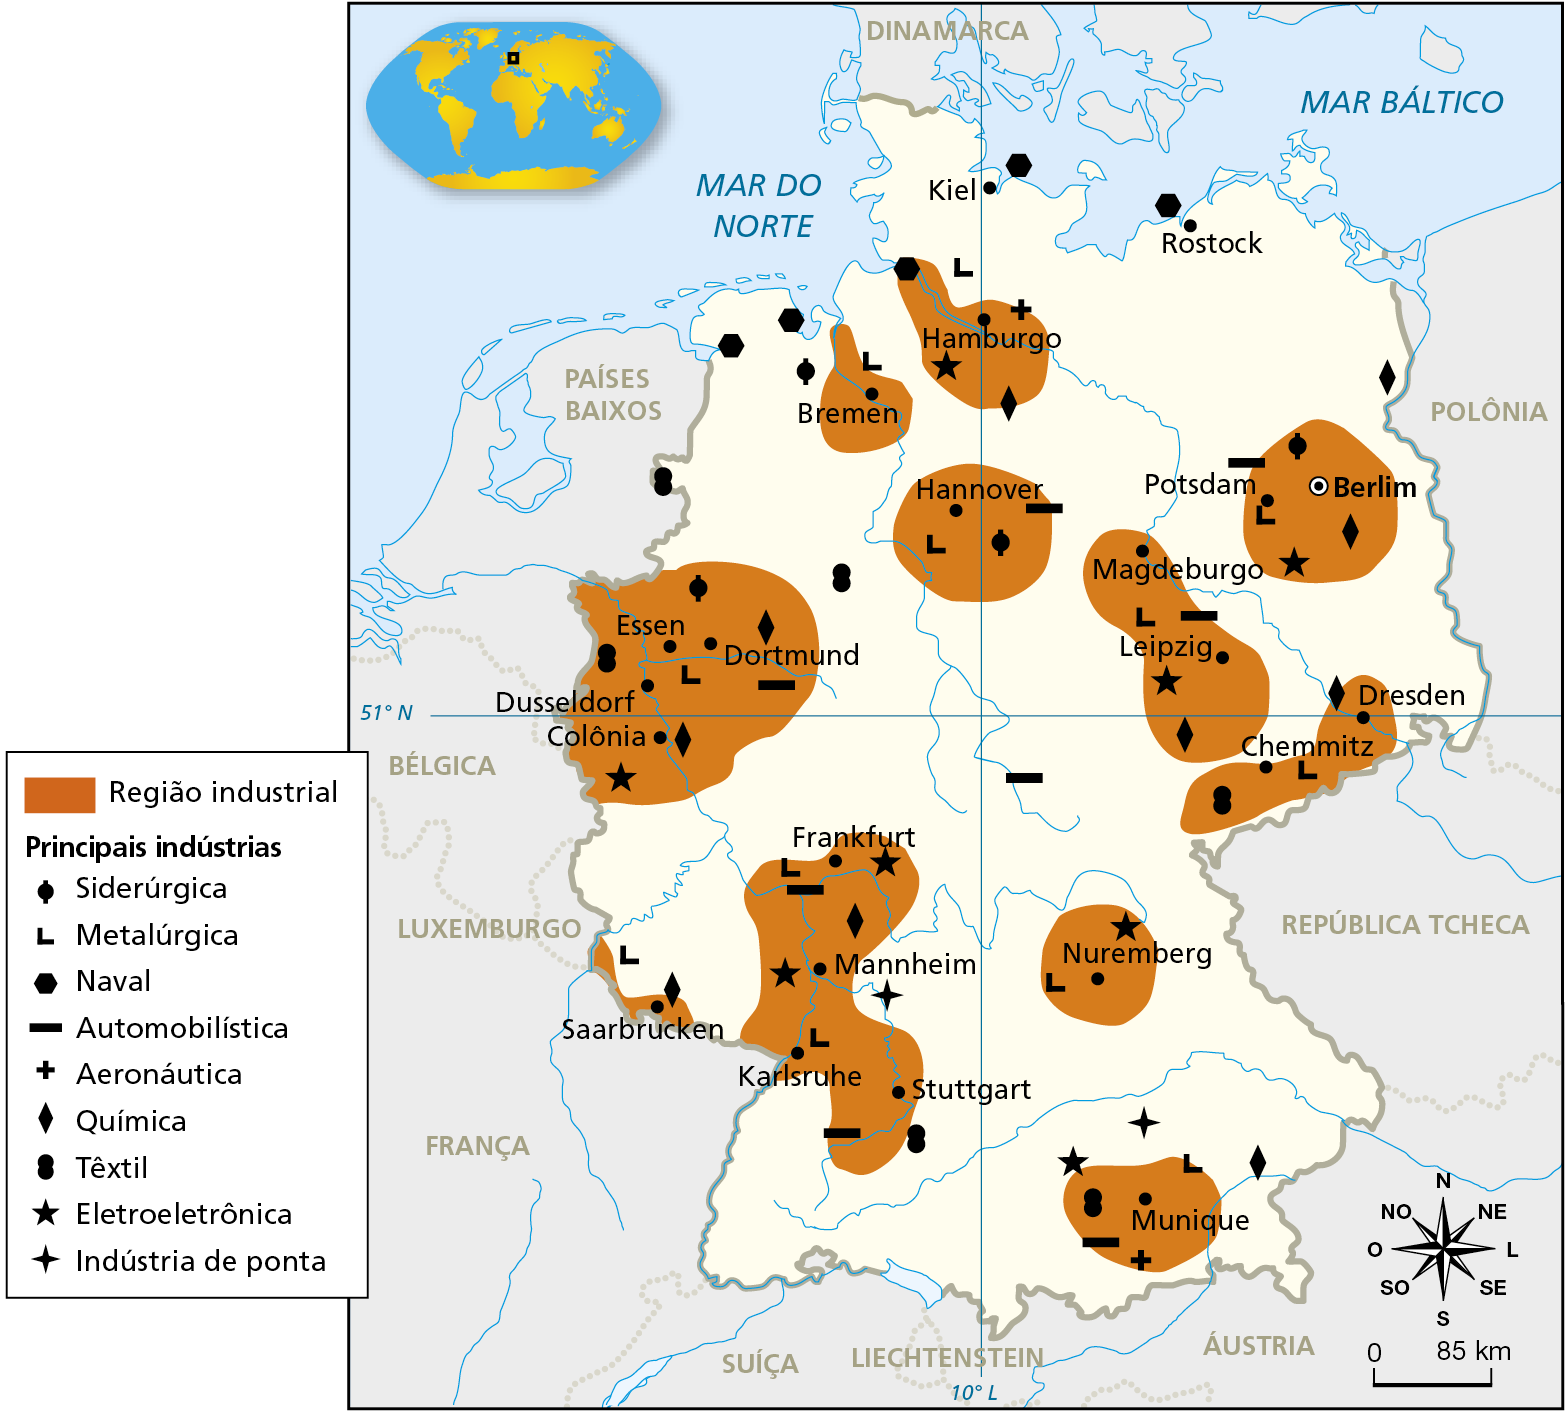 Mapa. Alemanha: principais regiões industriais. Mapa da Alemanha mostrando a localização dos principais parques industriais e dos tipos de indústrias existentes no país. Região industrial: regiões do entorno de Bremen (ao norte), Hamburgo (ao norte), Hannover (norte), Berlim e Potsdam (nordeste), Magdeburgo e Leipzig (nordeste), Dresden e Chemmitz (leste), Nuremberg (sudeste), Frankfurt, Mannheim, Karlsruhe e Stuttgart (sudoeste),  Saarbrucken (sudoeste), Munique (sul), Essen, Dortmund, Dusseldorf e Colônia (oeste). Principais indústrias. Siderúrgica: Bremen, Berlim, Hannover. Metalúrgica: Hamburgo, Bremen, Hannover, Essen, Dortmund, Leipzig, Potsdam, Chemmitz, Nuremberg, Frankfurt, Karlsruhe, Munique. Naval: Bremen, Kiel, Rostock, Hamburgo. Automobilística: Potsdam, Hannover, Dortmund, Frankfurt, Leipzig, Frankfurt, Stuttgart, Munique. Aeronáutica: Munique, Hamburgo. Química: Hamburgo, Berlim, Dresden, Leipzig, Dortmund, Colônia, Mannheim, Saarbrucken, Munique. Têxtil: Dusseldorf, Stuttgart, Munique, Chemmitz. Eletroeletrônica: nas regiões industriais de Hamburgo, Berlim, Leipzig, Colônia, Frankfurt, Nuremberg, Mannheim, Munique. Indústria de ponta: ao norte de Munique. Abaixo, rosa dos ventos e escala de 0 a 85 quilômetros.